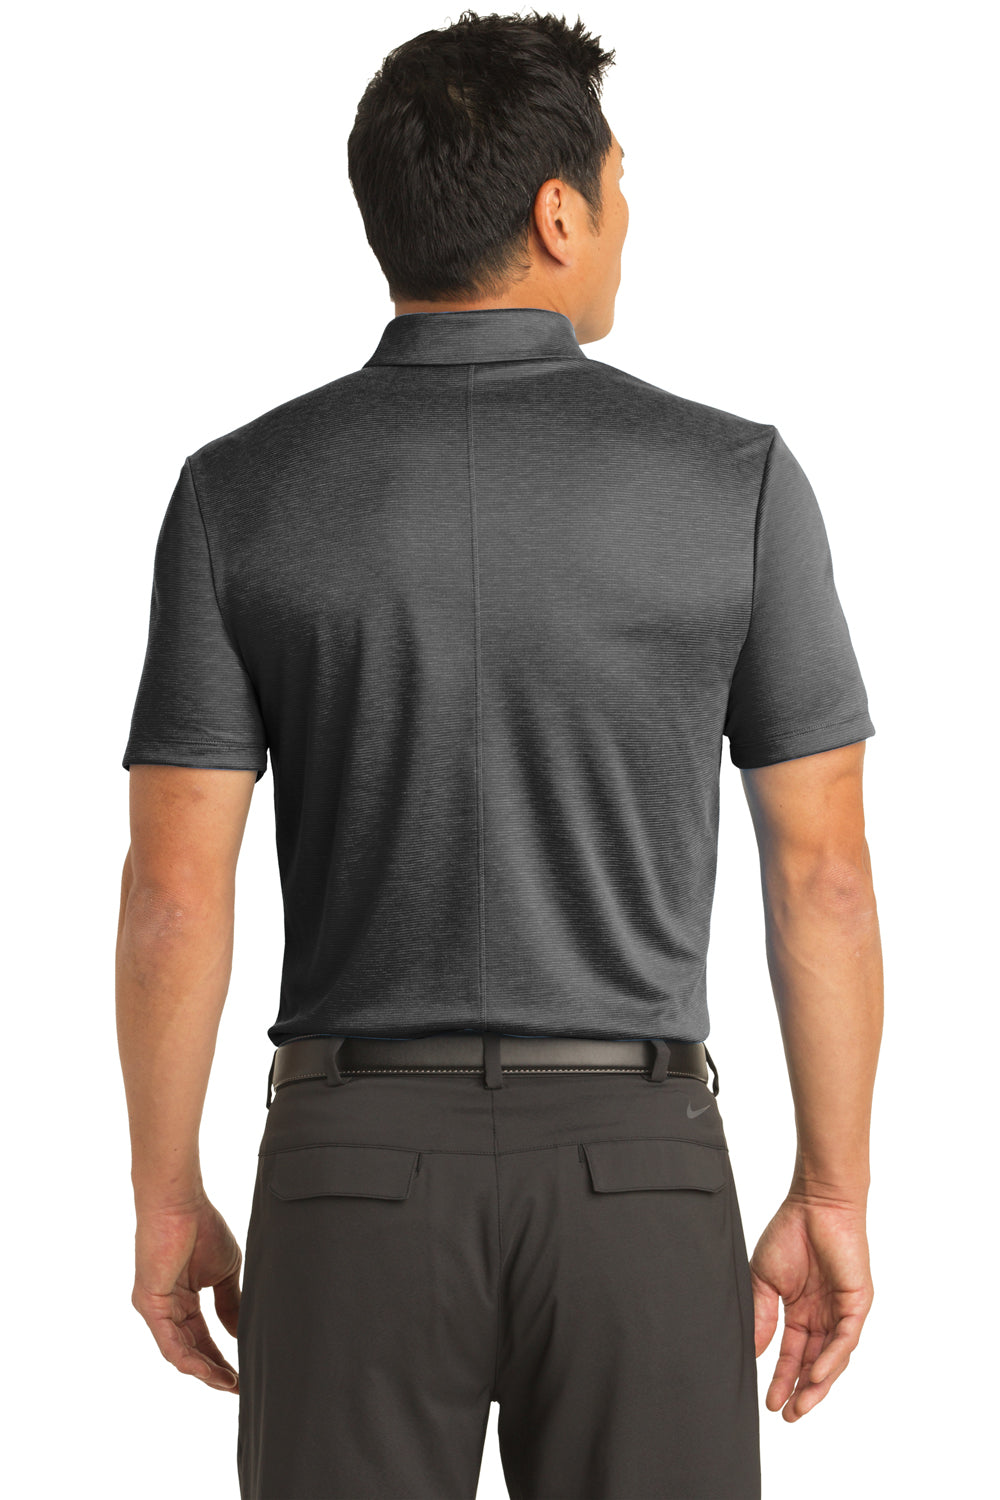 Nike NKAA1854 Mens Prime Dri-Fit Moisture Wicking Short Sleeve Polo Shirt Black Model Back